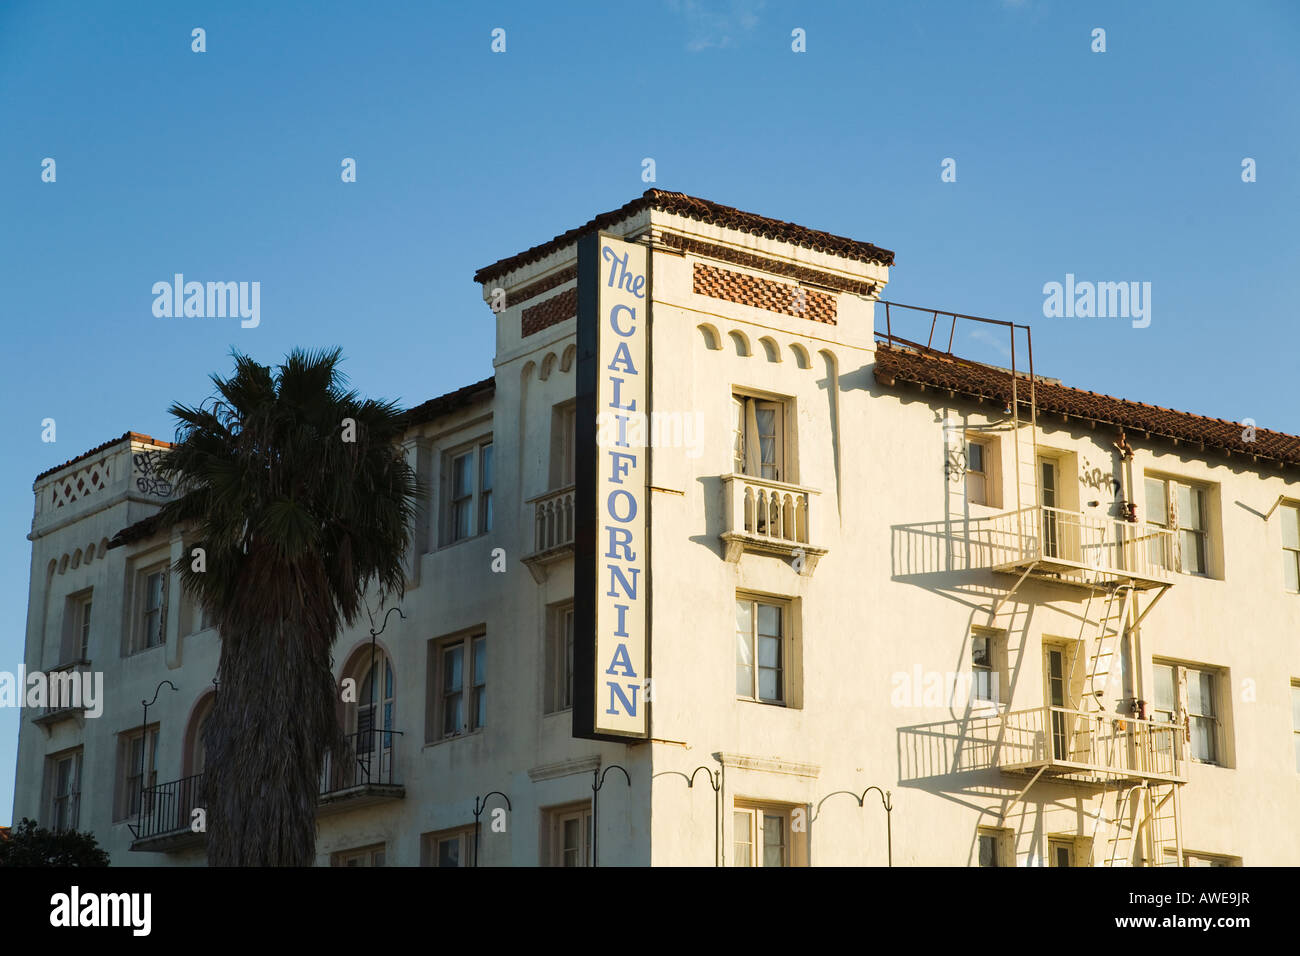 CALIFORNIA Santa Barbara signe sur l'évacuation de l'hôtel californien sur quatre étages en briques sculpture reconstruite après 1925 tremblement de terre Banque D'Images